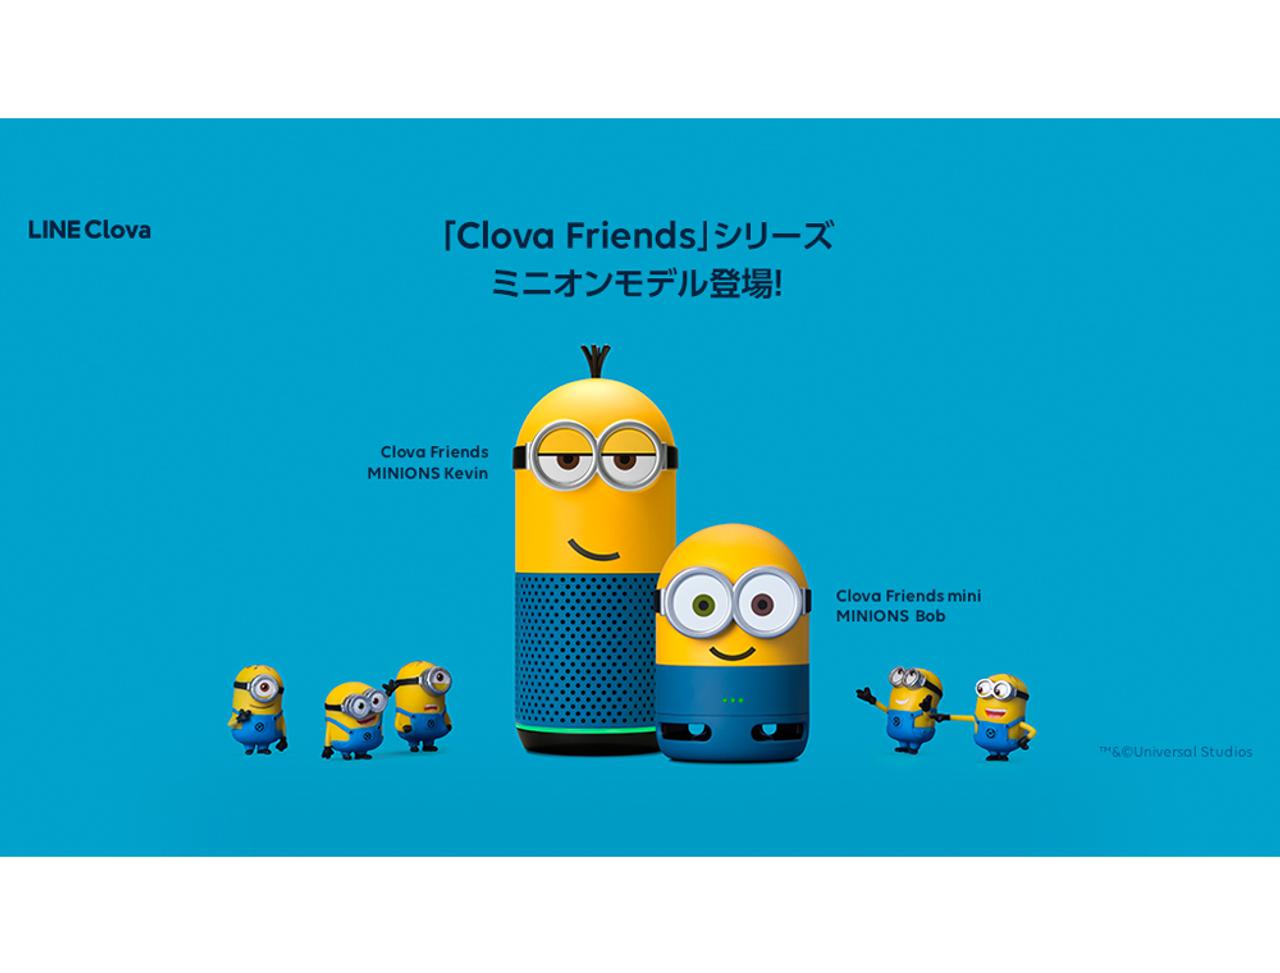 ミニオンがくるぞー!! LINEのスマートスピーカー｢Clova Friends｣の新モデルが8月21日に発売